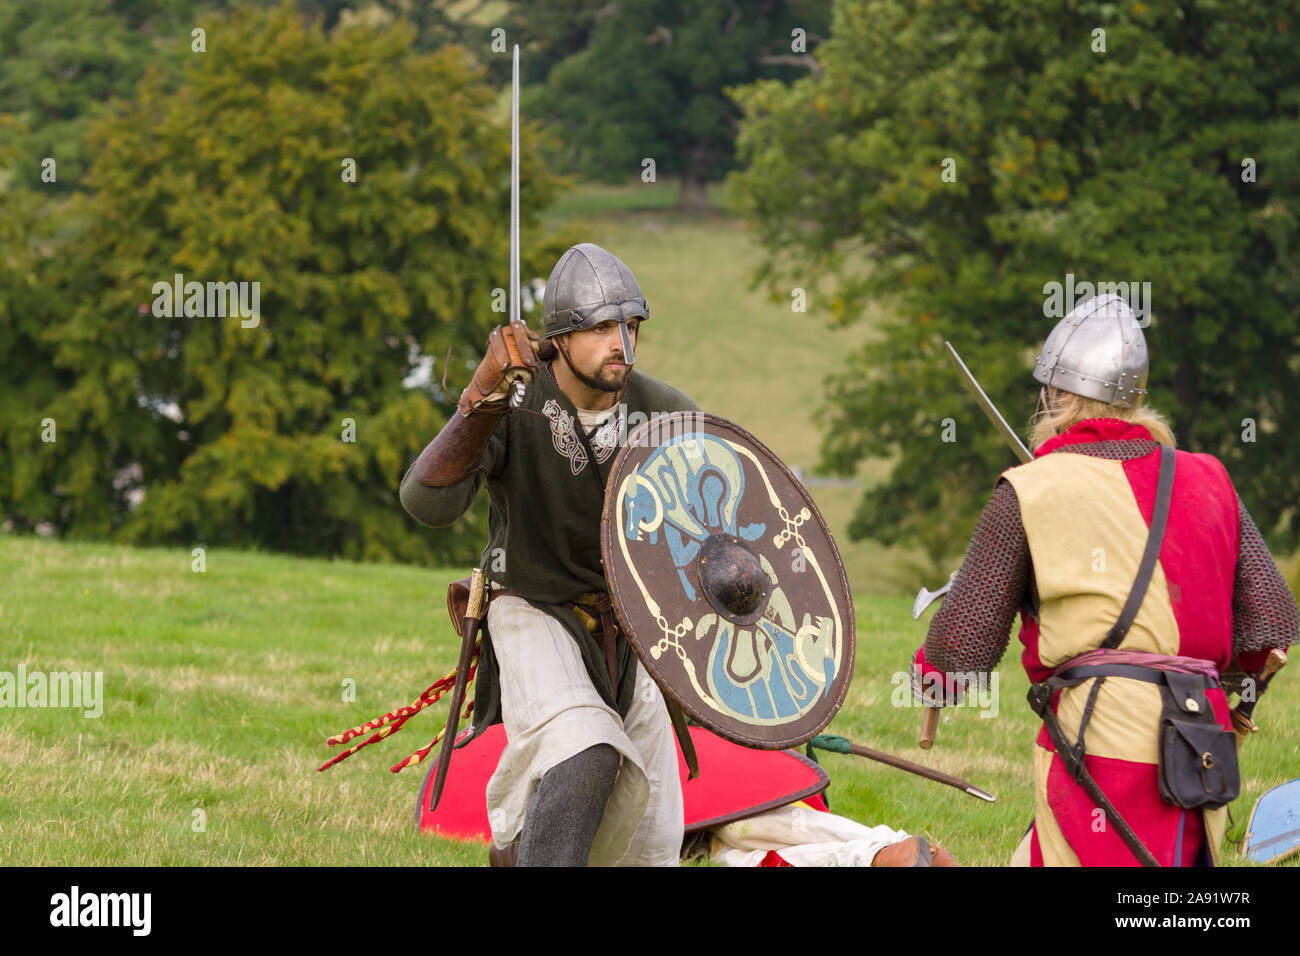 Mittelalterliche Re-enactors in Walisisch und Englisch Rüstung und Kostüme des 12. Jahrhunderts mit Waffen Simulation Bekämpfung der Zeit gekleidet Stockfoto